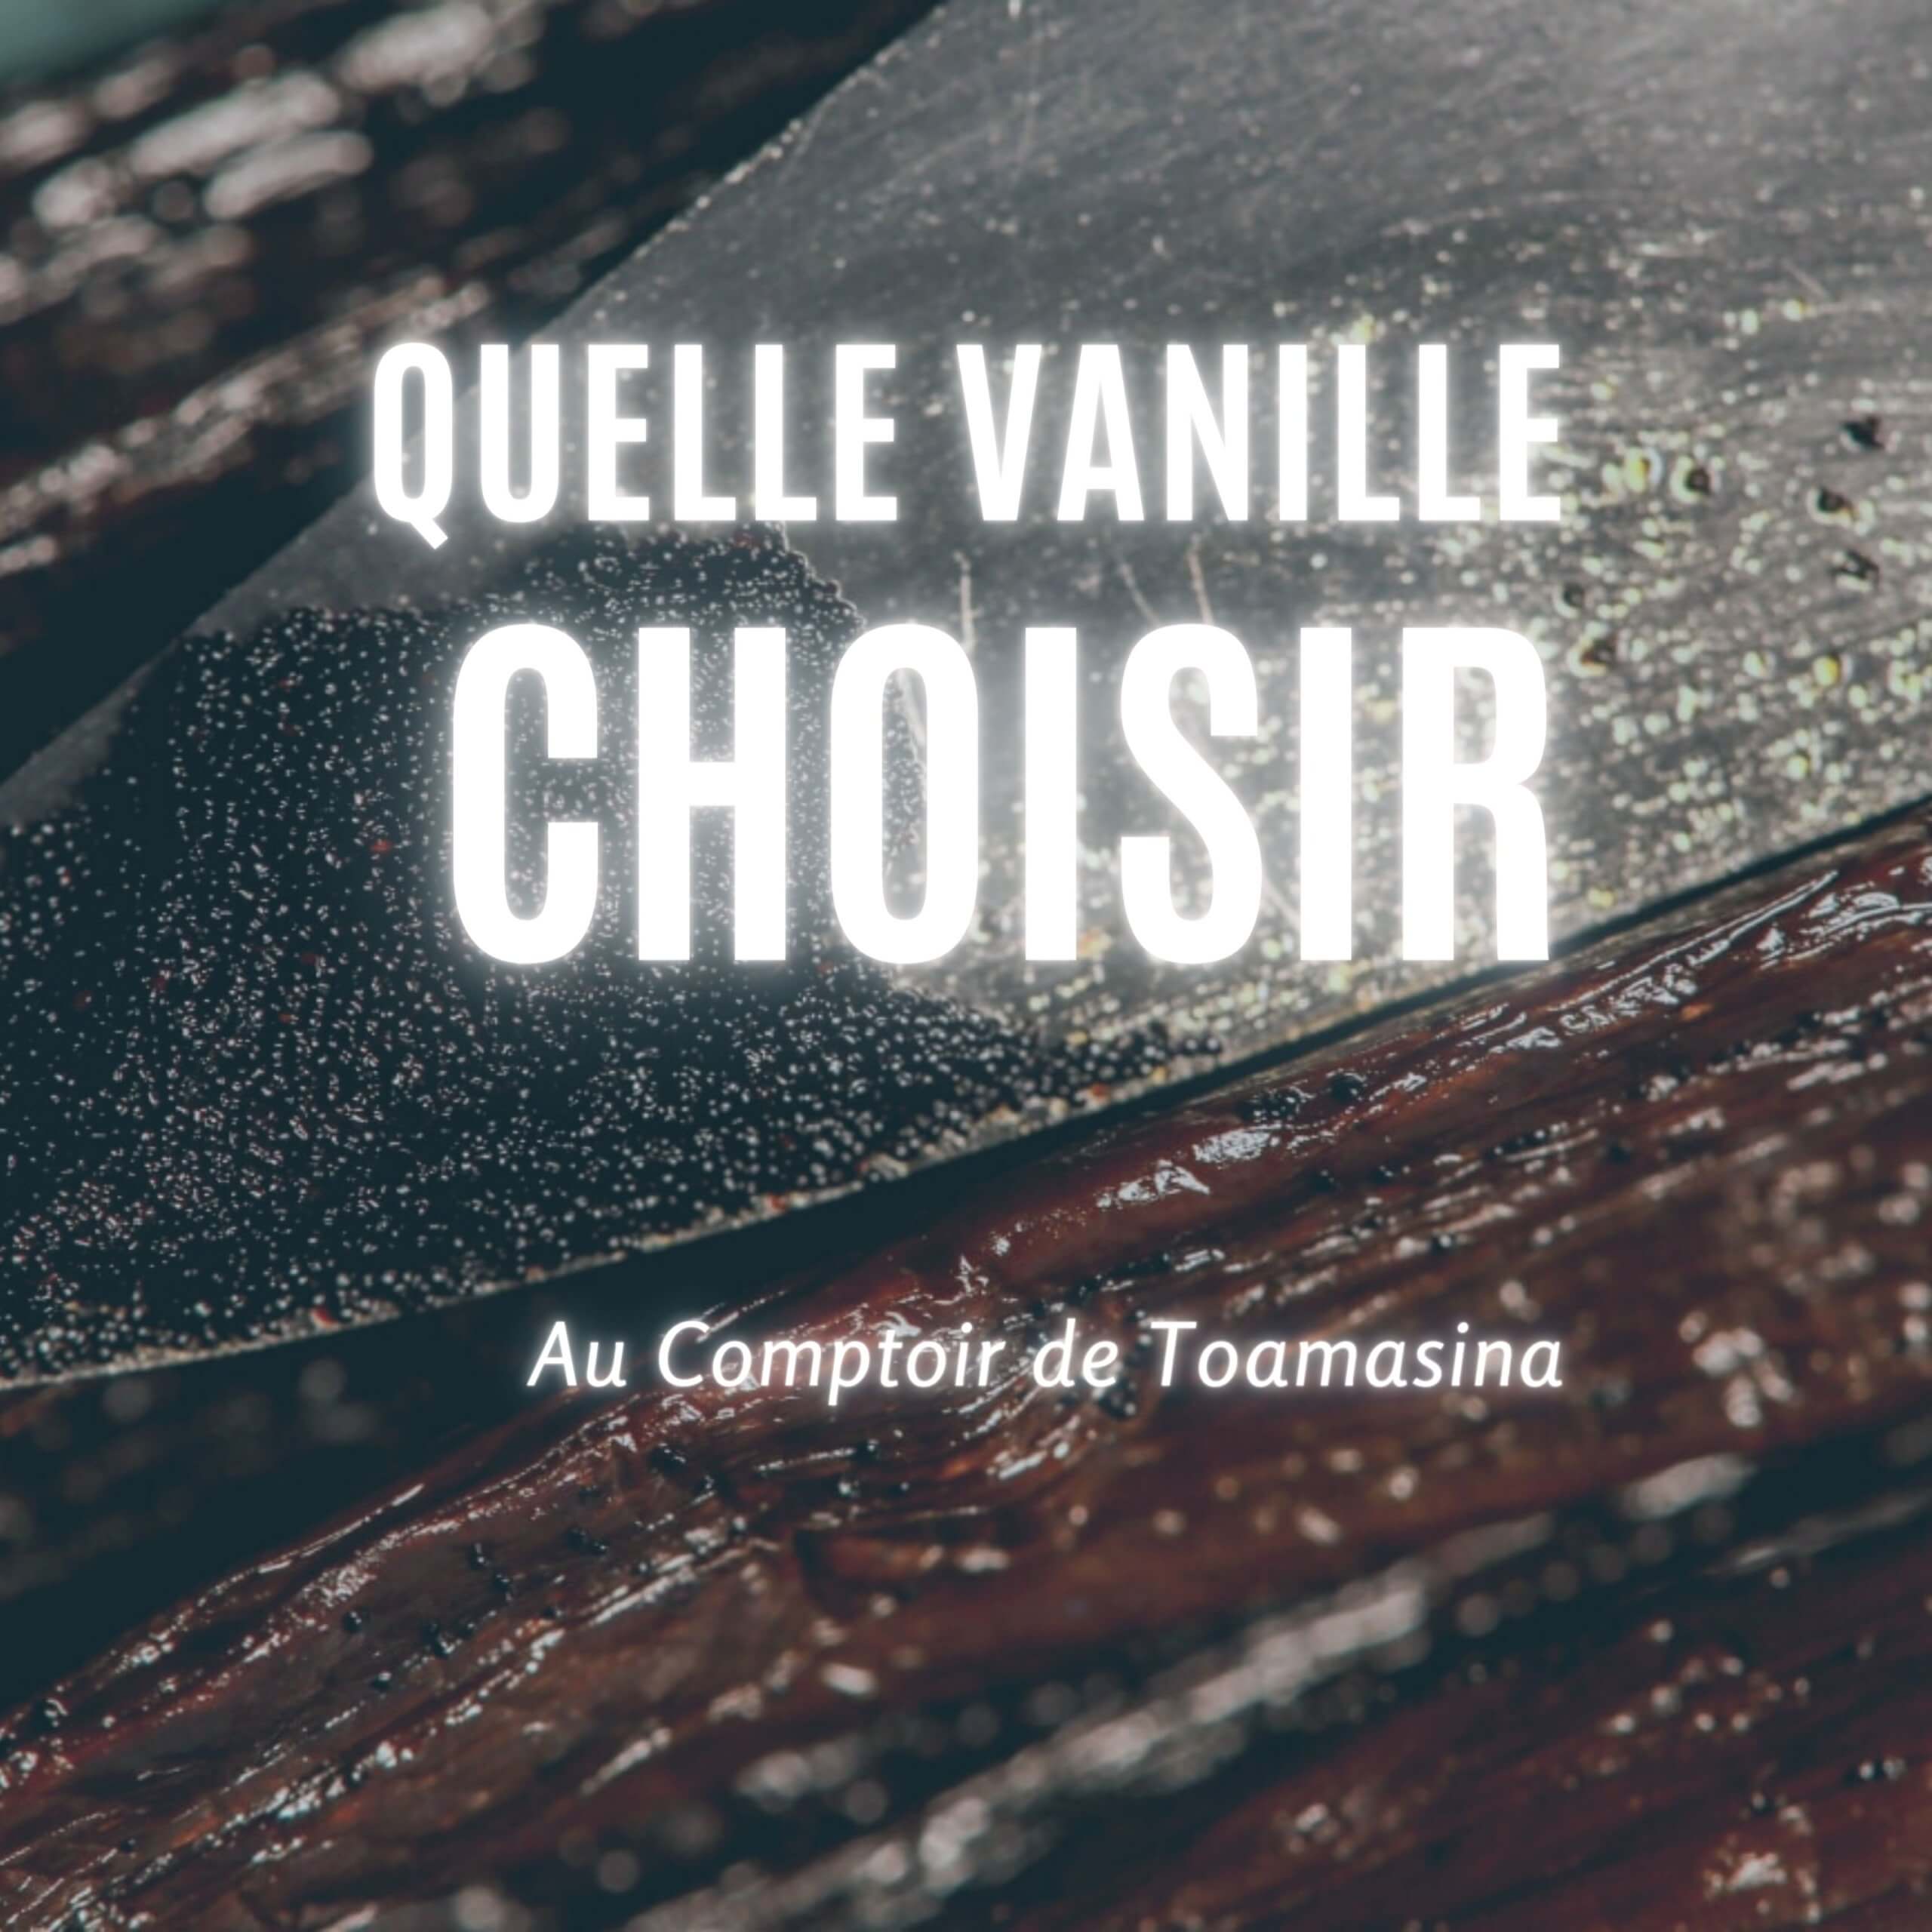 Quelle origine de vanille choisir - Arnaud Vanille